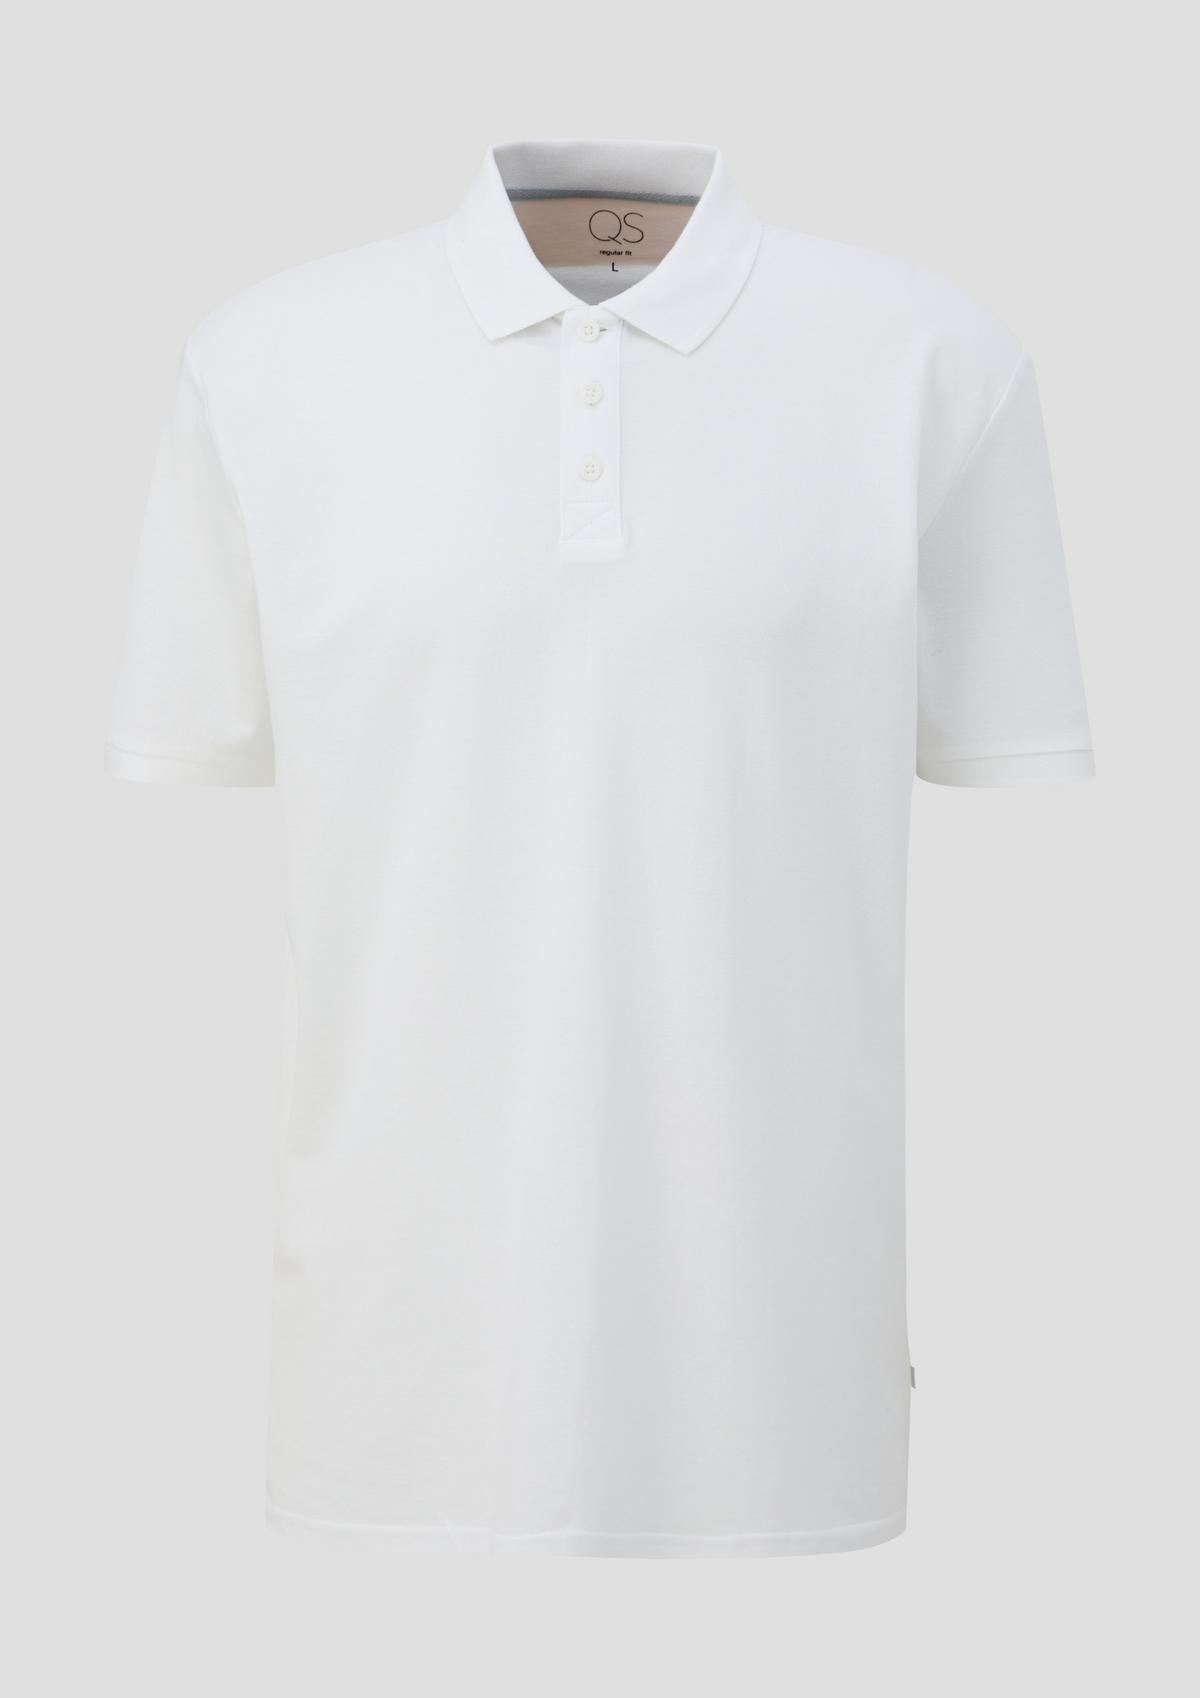 s.Oliver Basic-style polo shirt